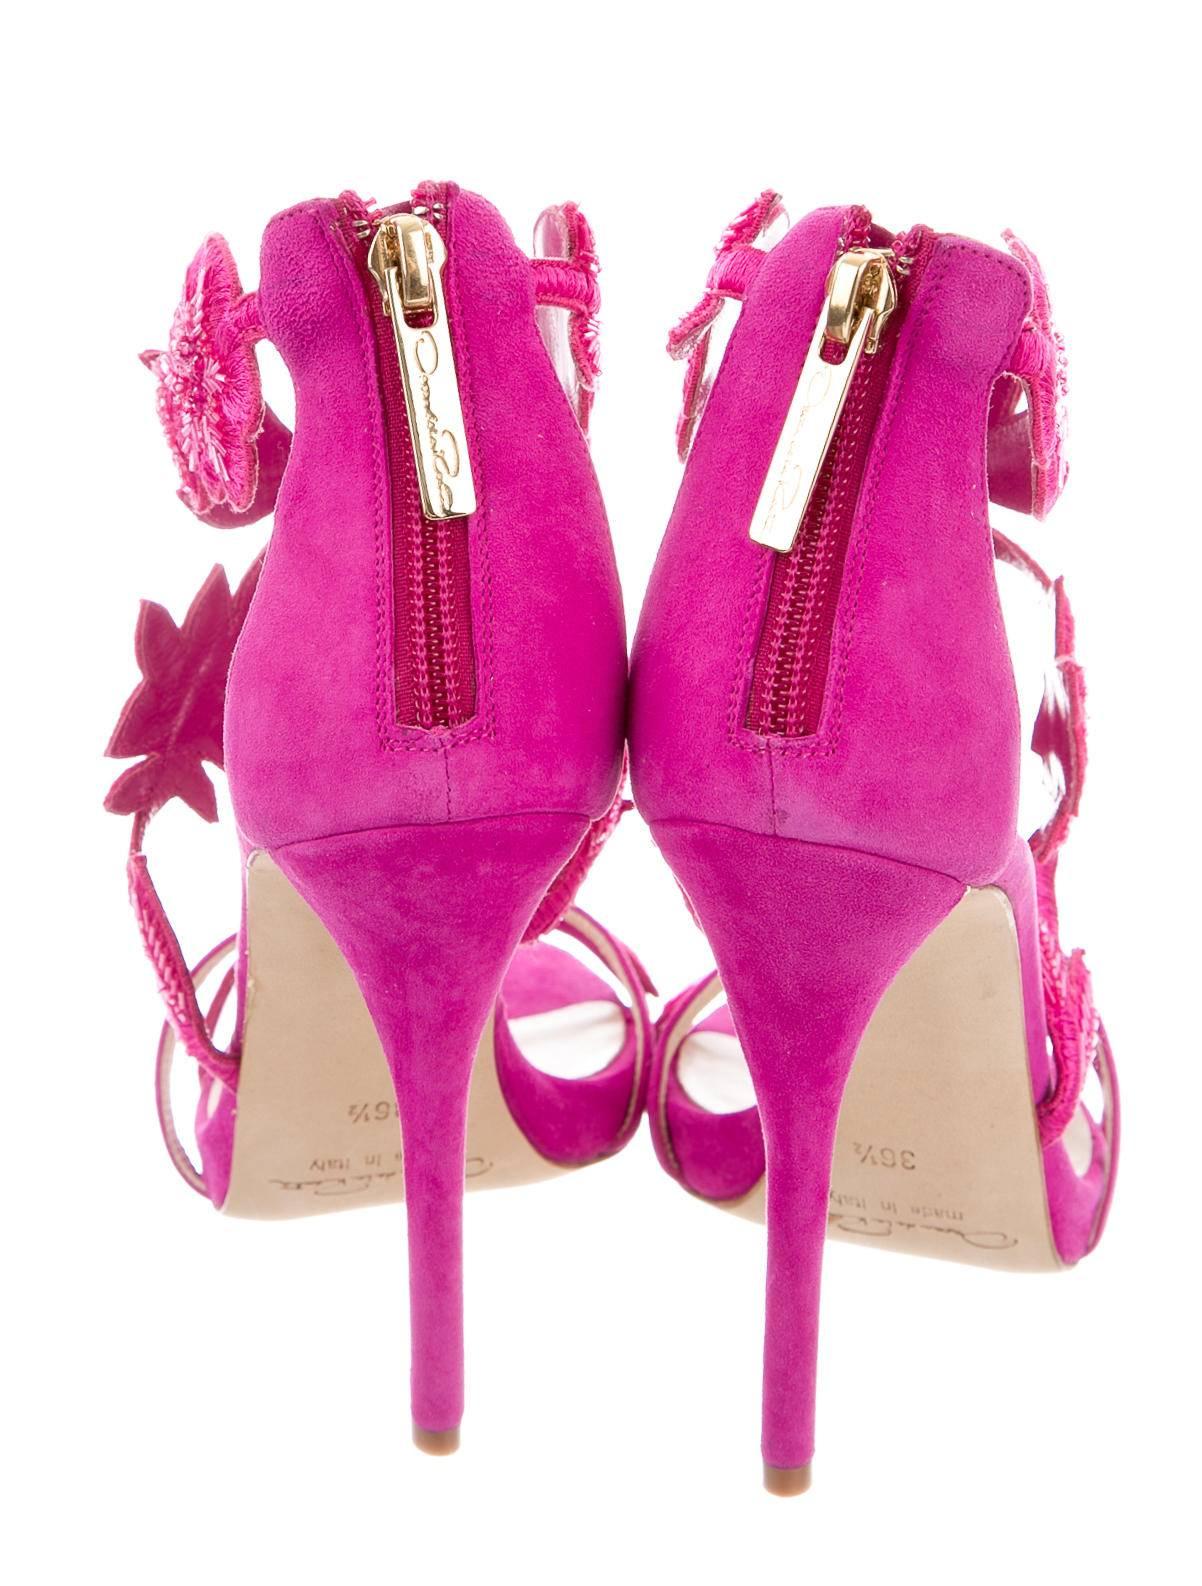 Women's Oscar de la Rental NEW Pink Suede Bead Floral High Heels Sandals in Box